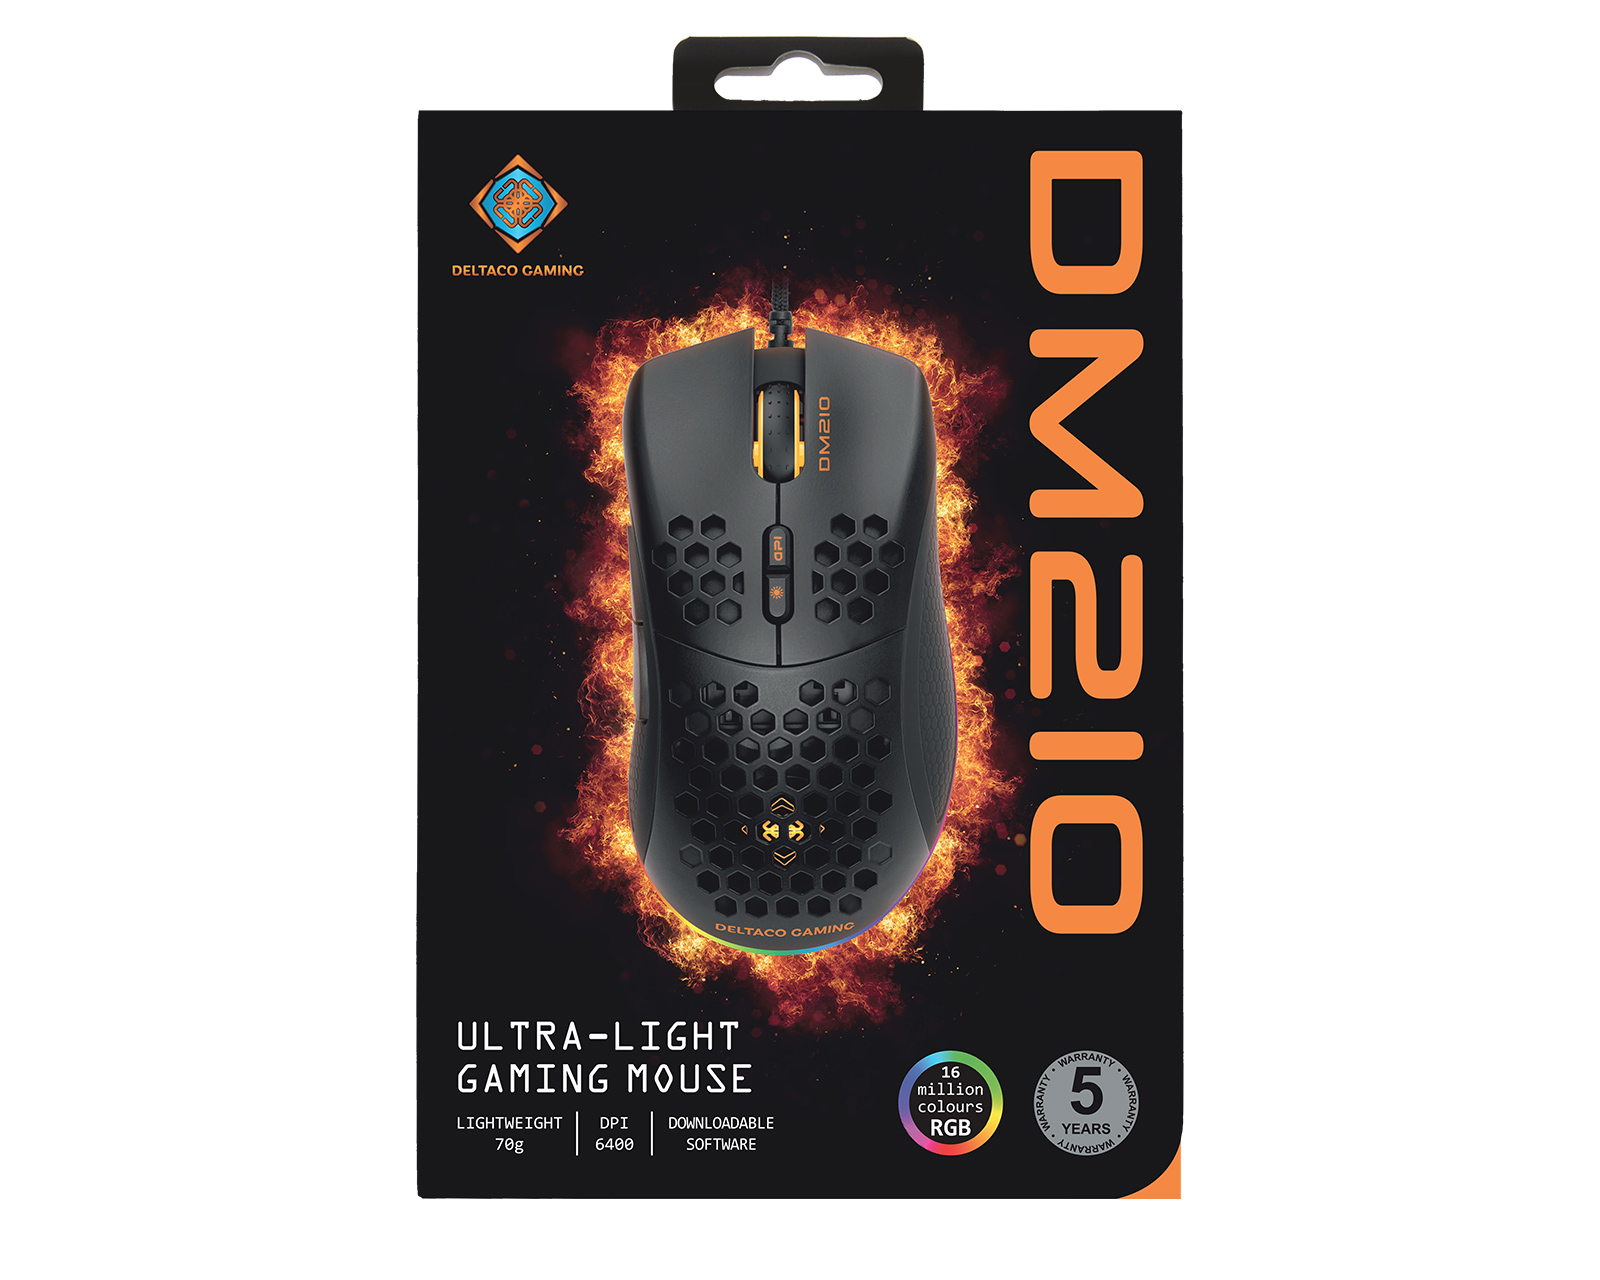 Chuột chơi game Deltaco Gaming DM210 Ultra-Light RGB Gaming Mouse là sản phẩm có thiết kế đẹp mắt, với ánh sáng RGB và trọng lượng cực nhẹ, mang đến trải nghiệm chơi game tuyệt vời cho người dùng. Sản phẩm này được trang bị nhiều tính năng độc đáo, giúp người dùng có lợi thế trong các trò chơi yêu thích của họ.